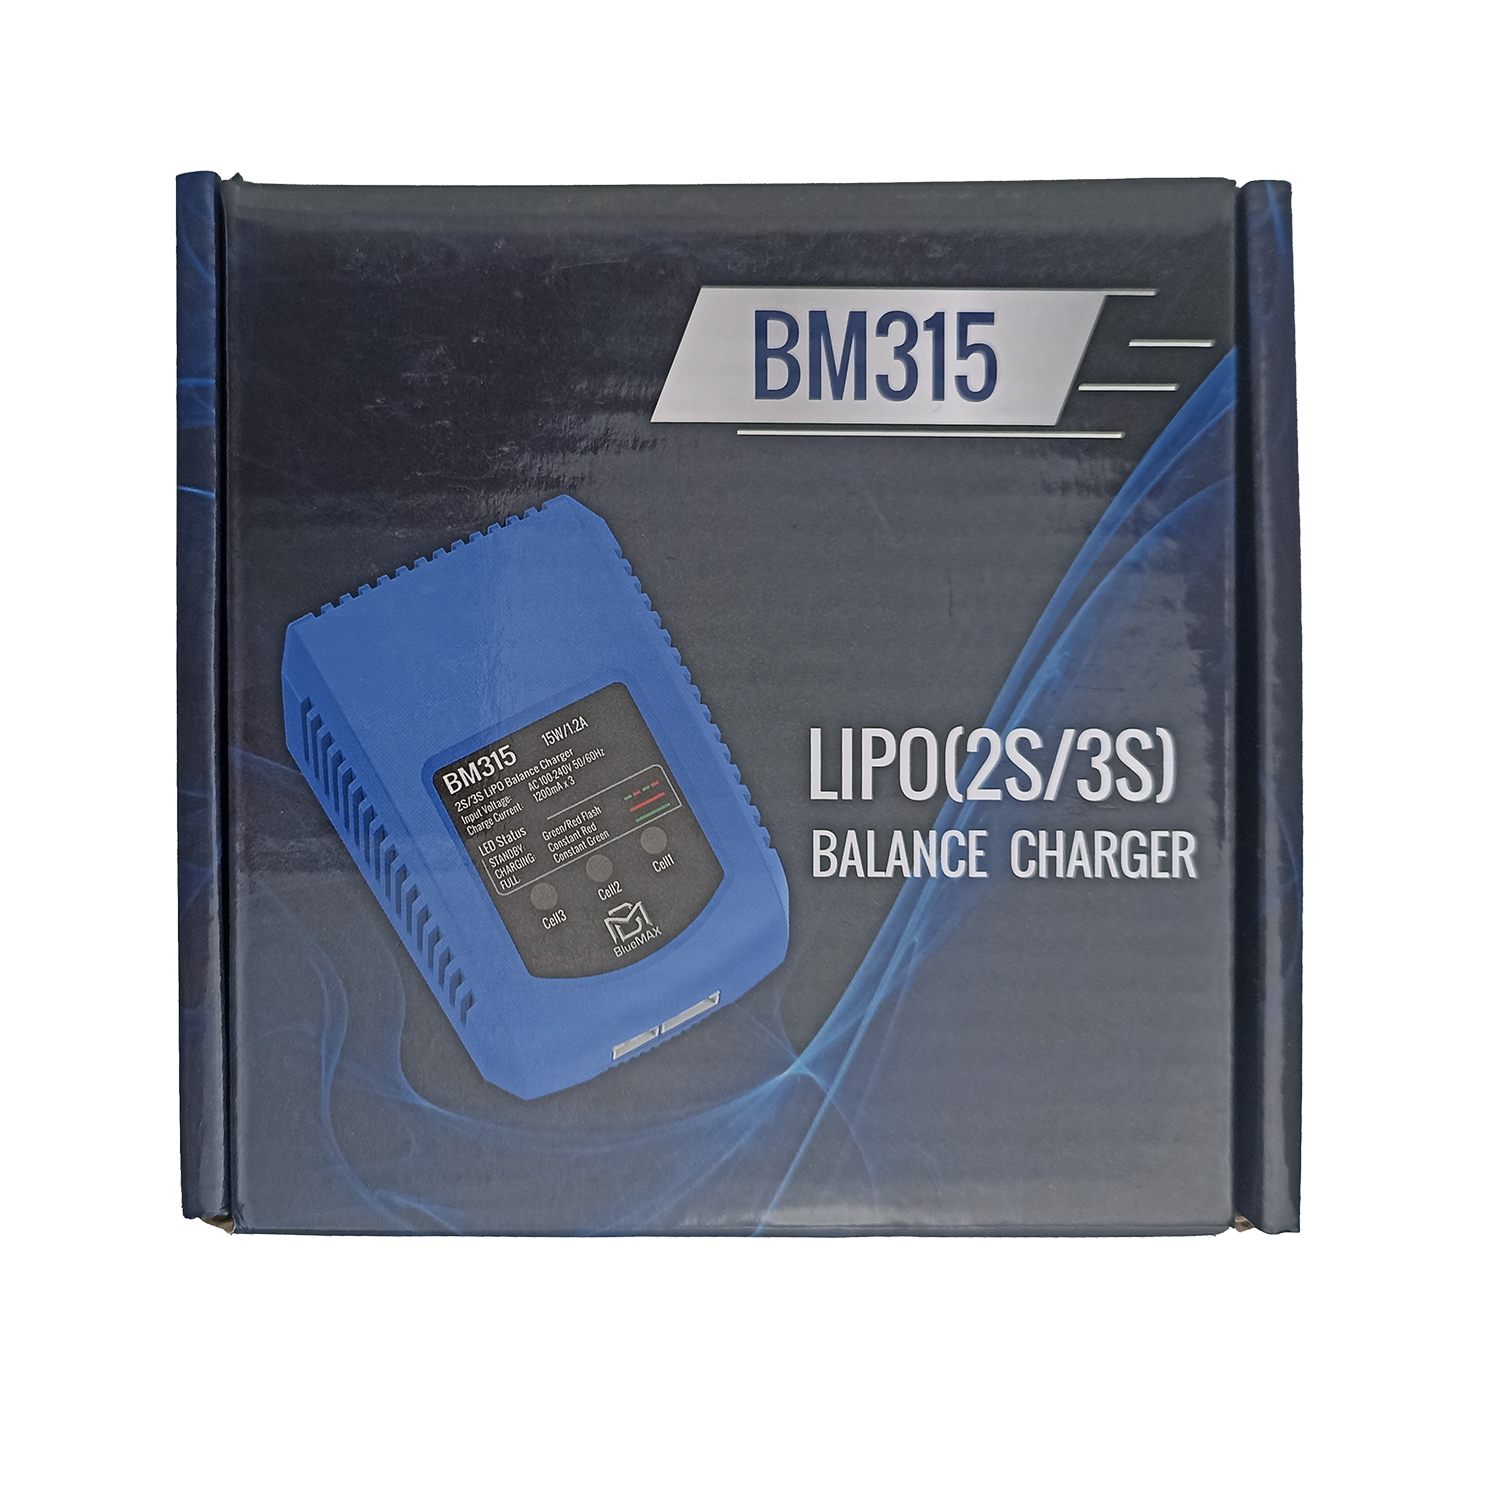 Зарядное устройство BM315 for LIPo (2S/3S)